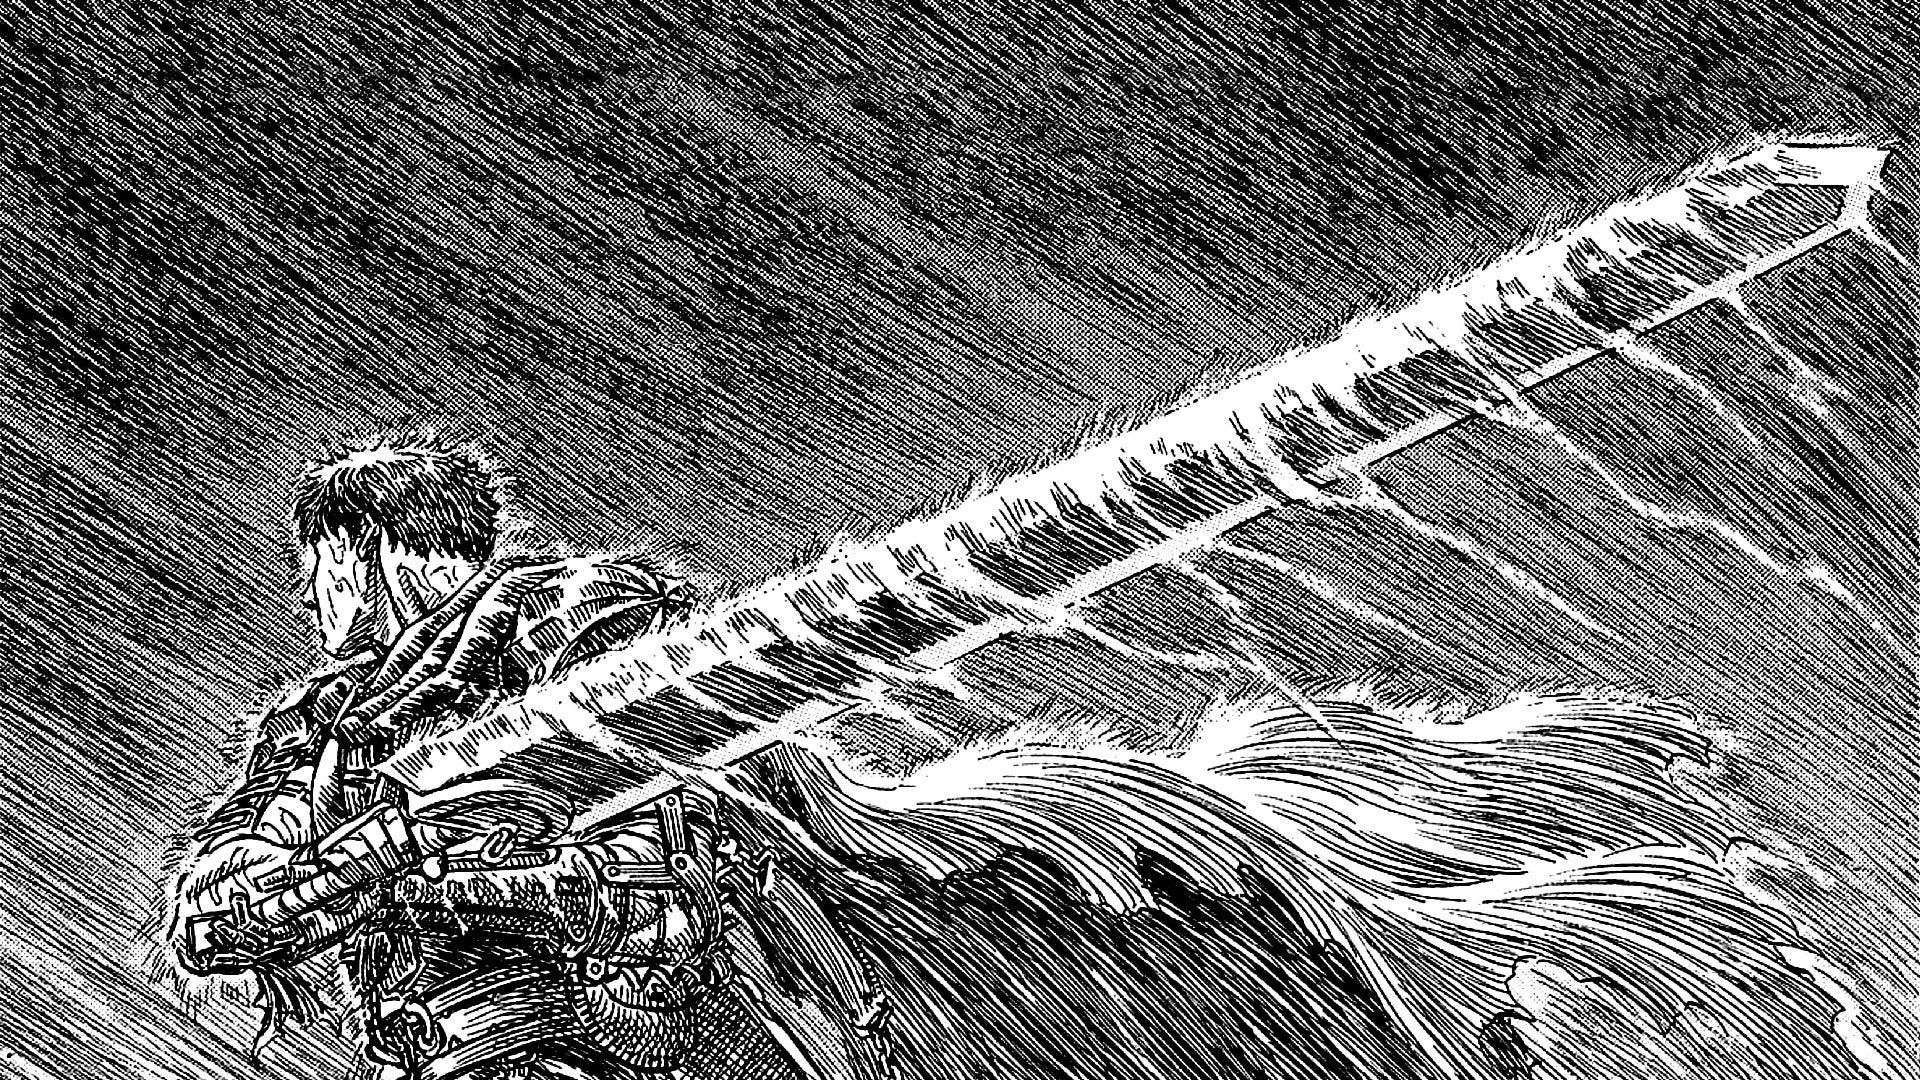 Berserk Best Manga Panels - One Of My Favorite Panels In The Entire